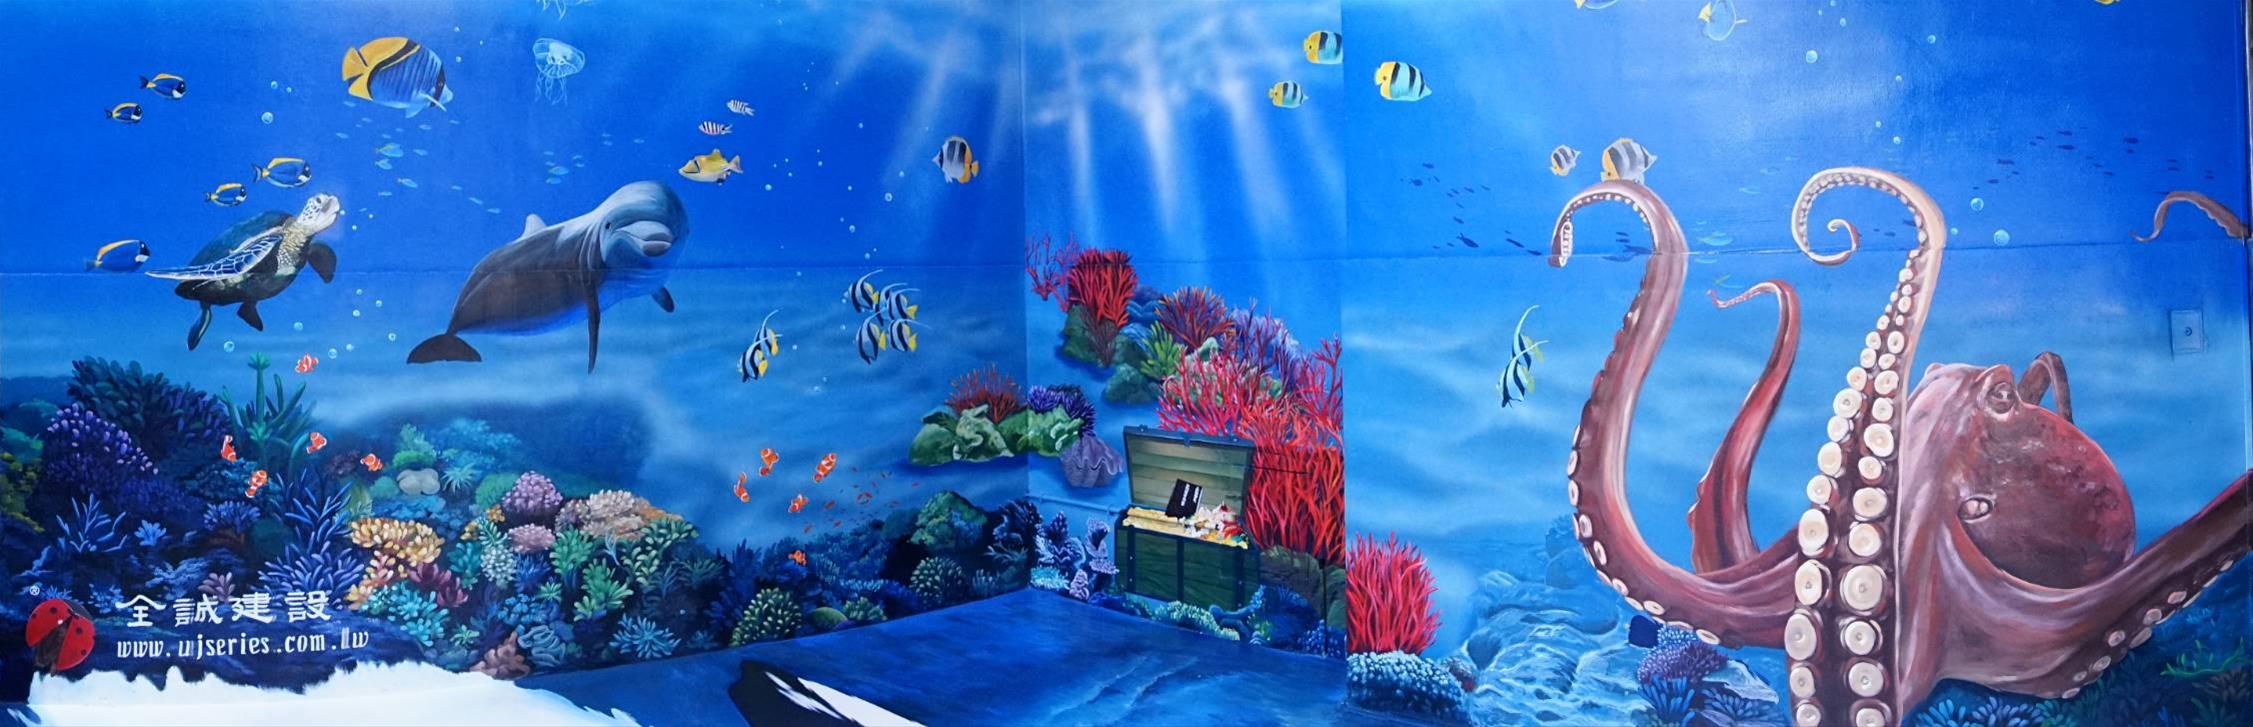 「知識如海」3D立體彩繪地畫